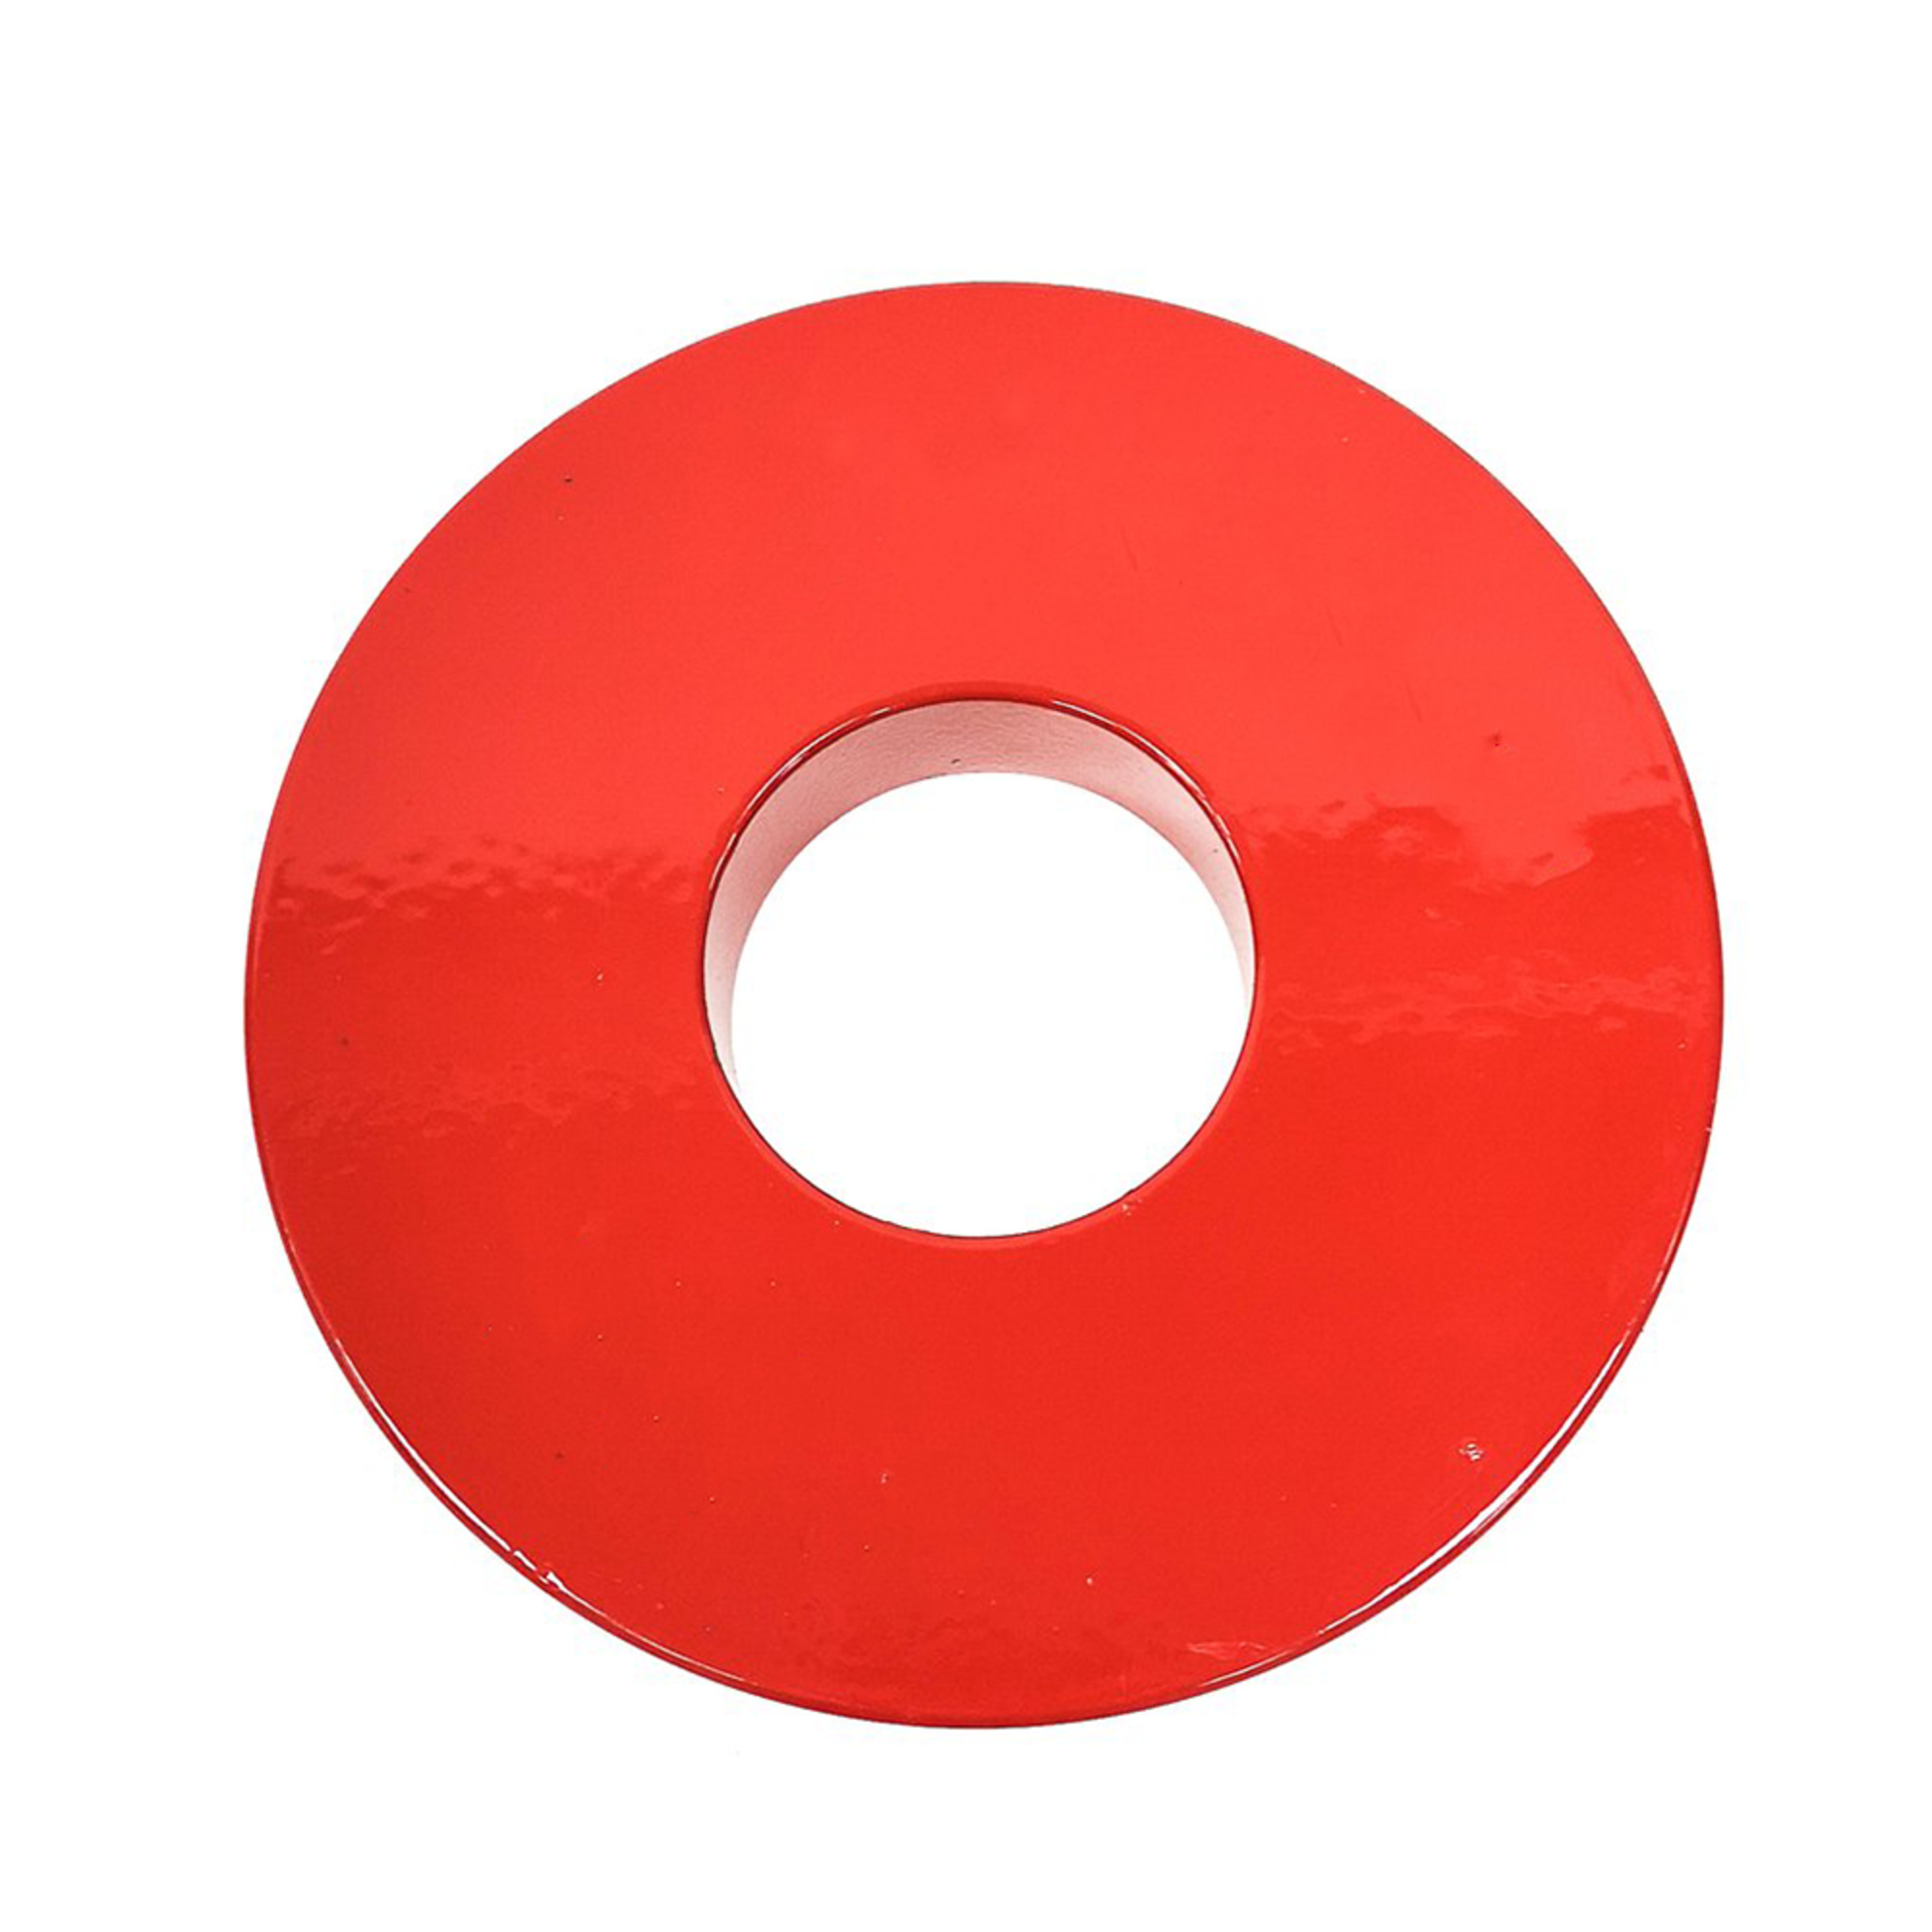 Discos  Fittest  Disco De Hierro Fraccionado 1.5kg - Rojo - Disco De Pesas  MKP